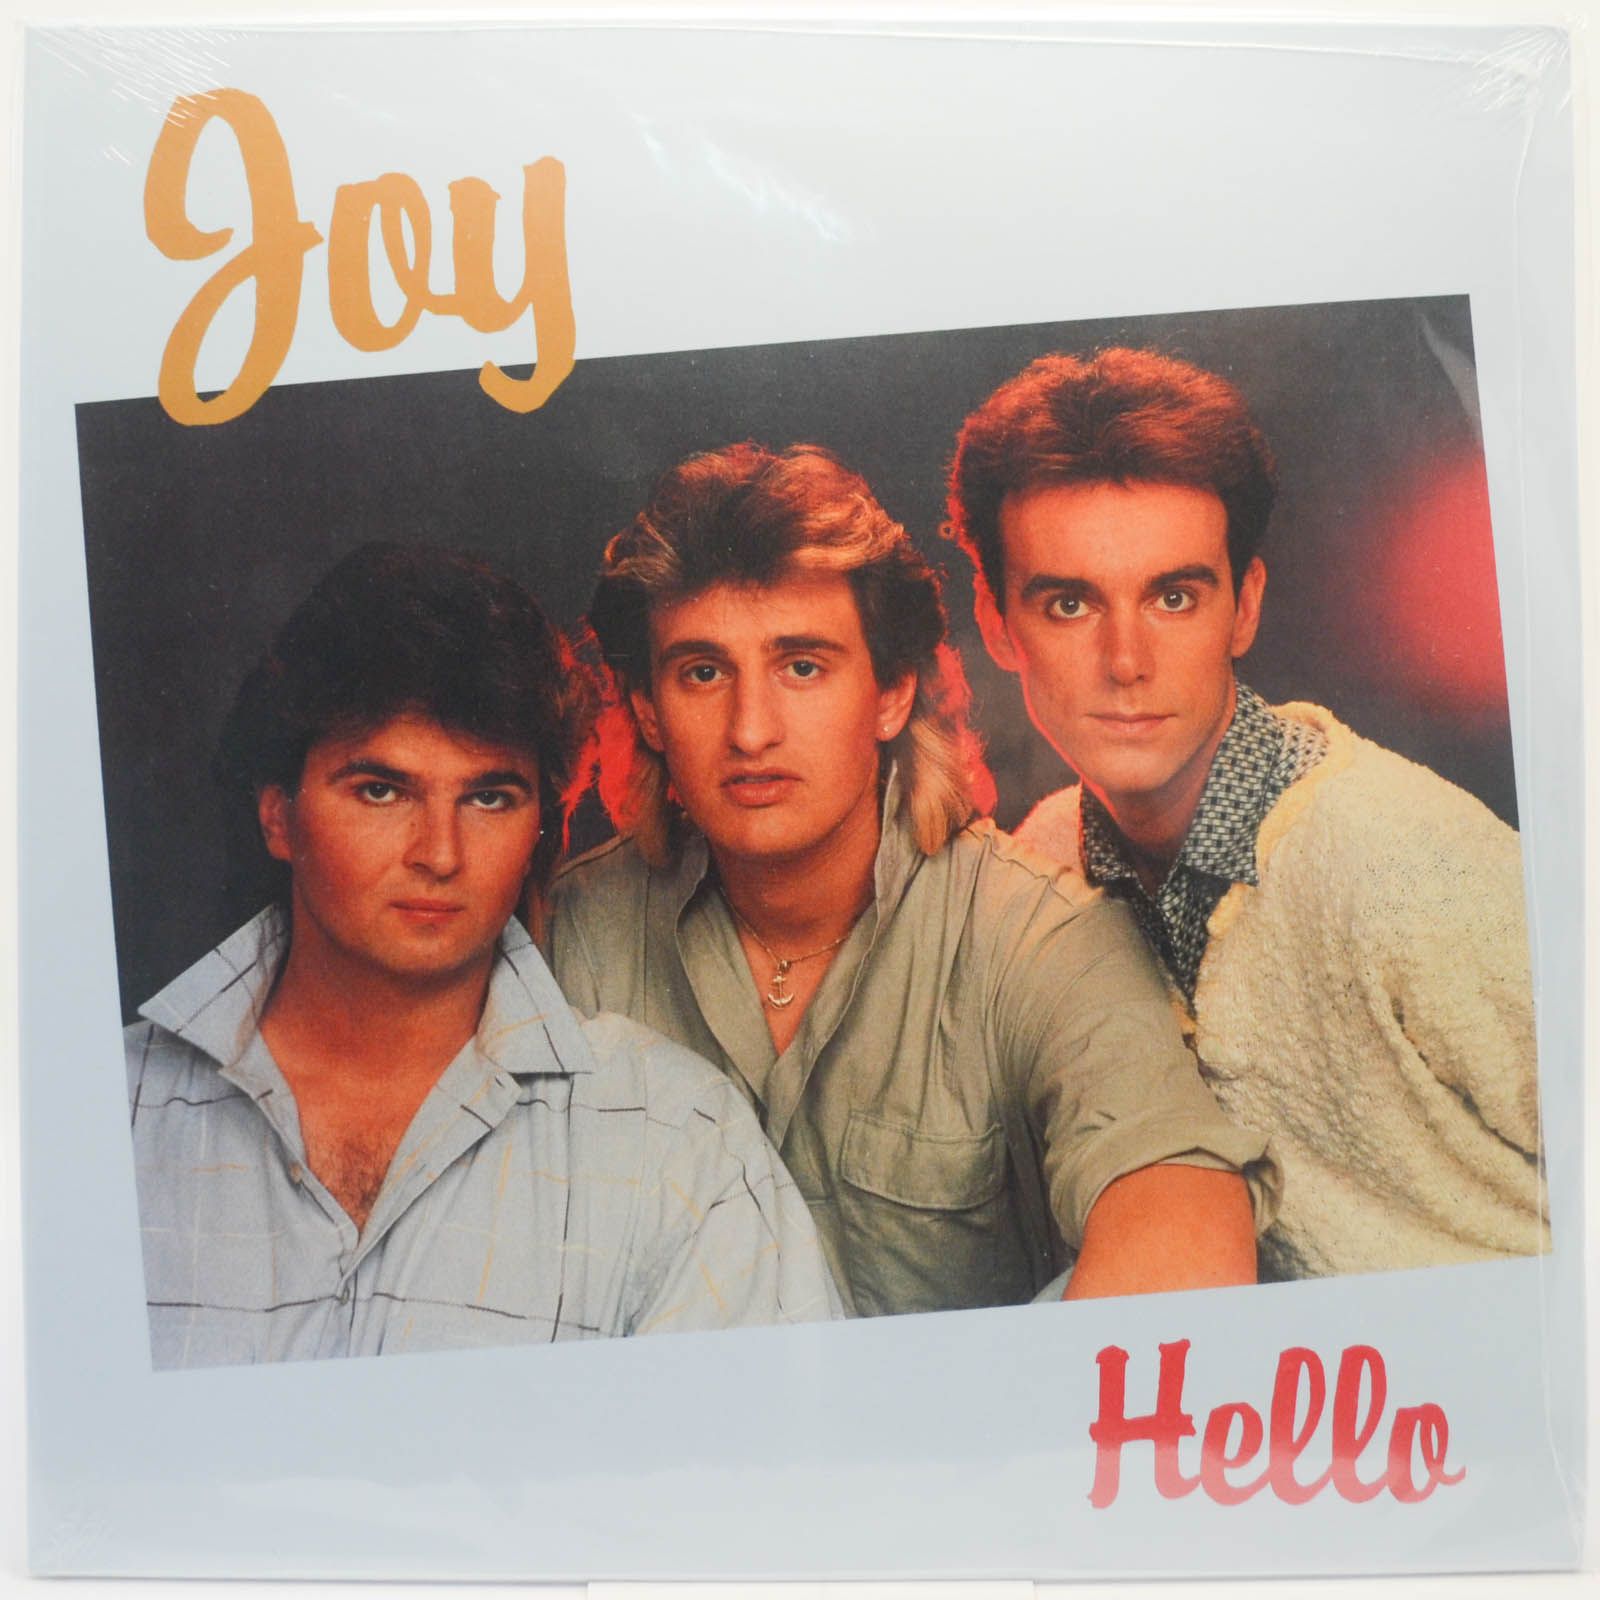 Групп хелло. Joy hello 1986 LP. Joy группа 1986. Группа Джой в молодости. Группа Джой 1987.